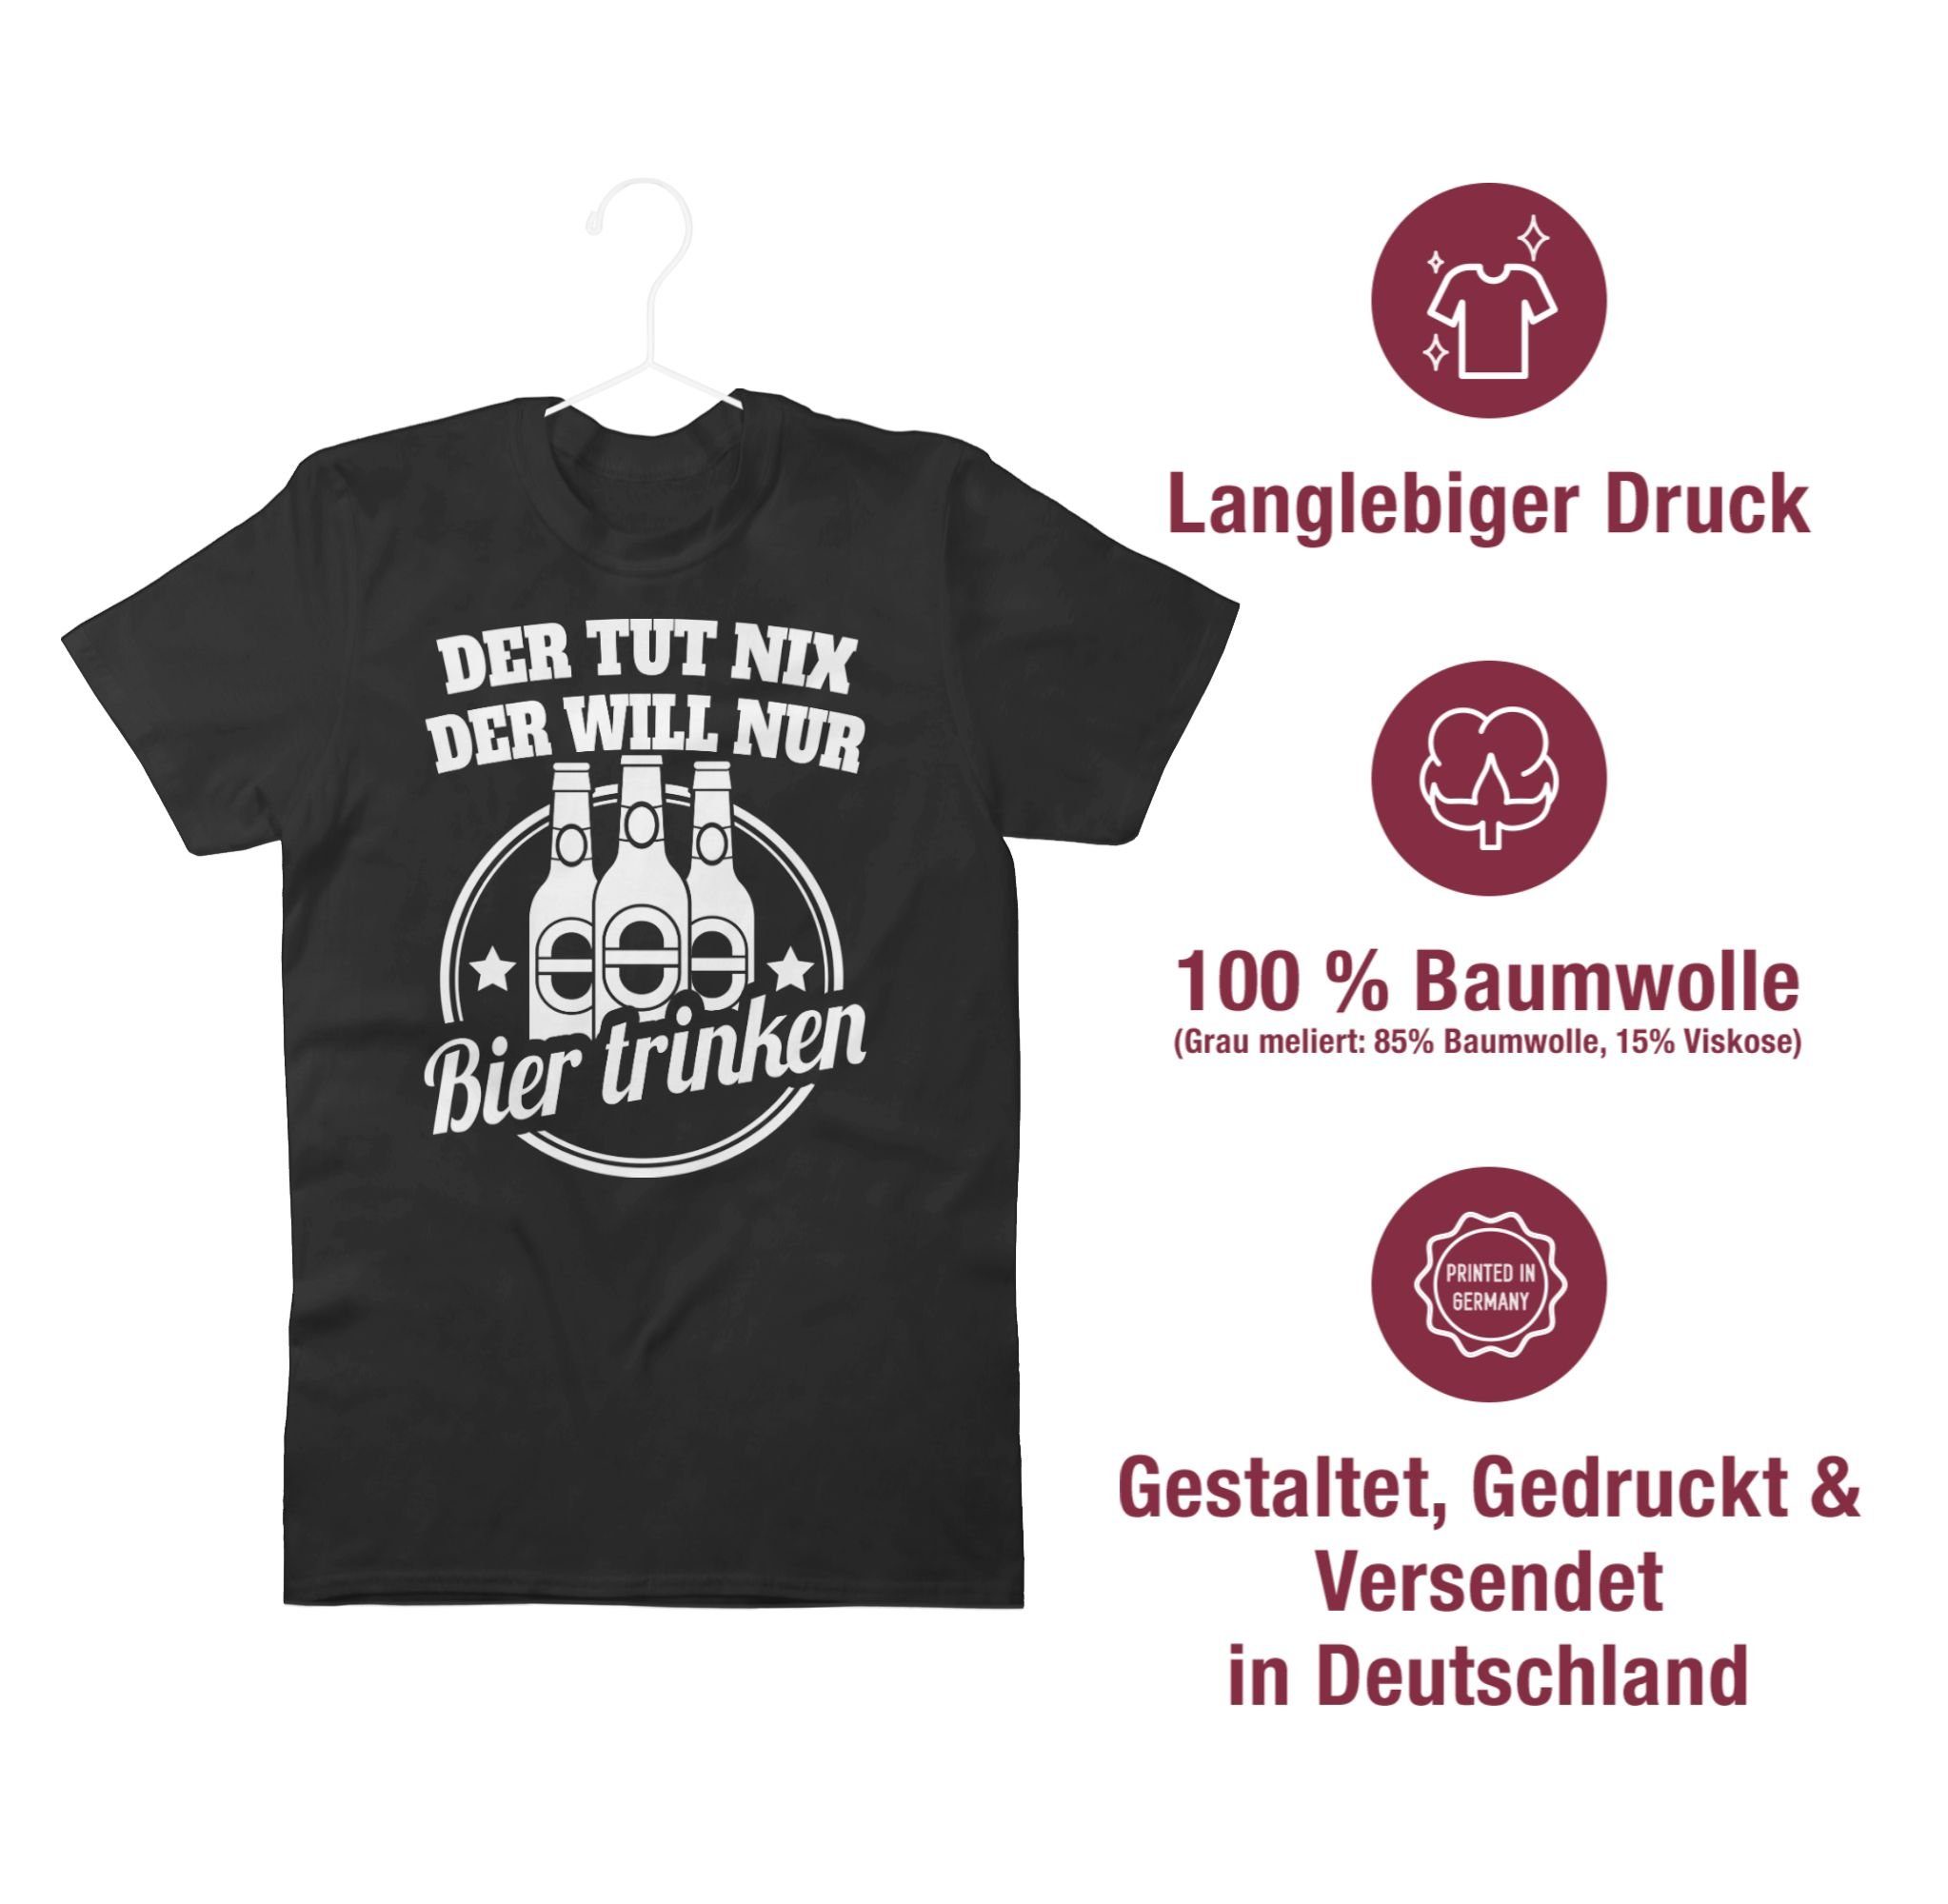 Shirtracer T-Shirt Der tut der Bier 1 will Spruch mit Sprüche nur nix trinken Schwarz Statement